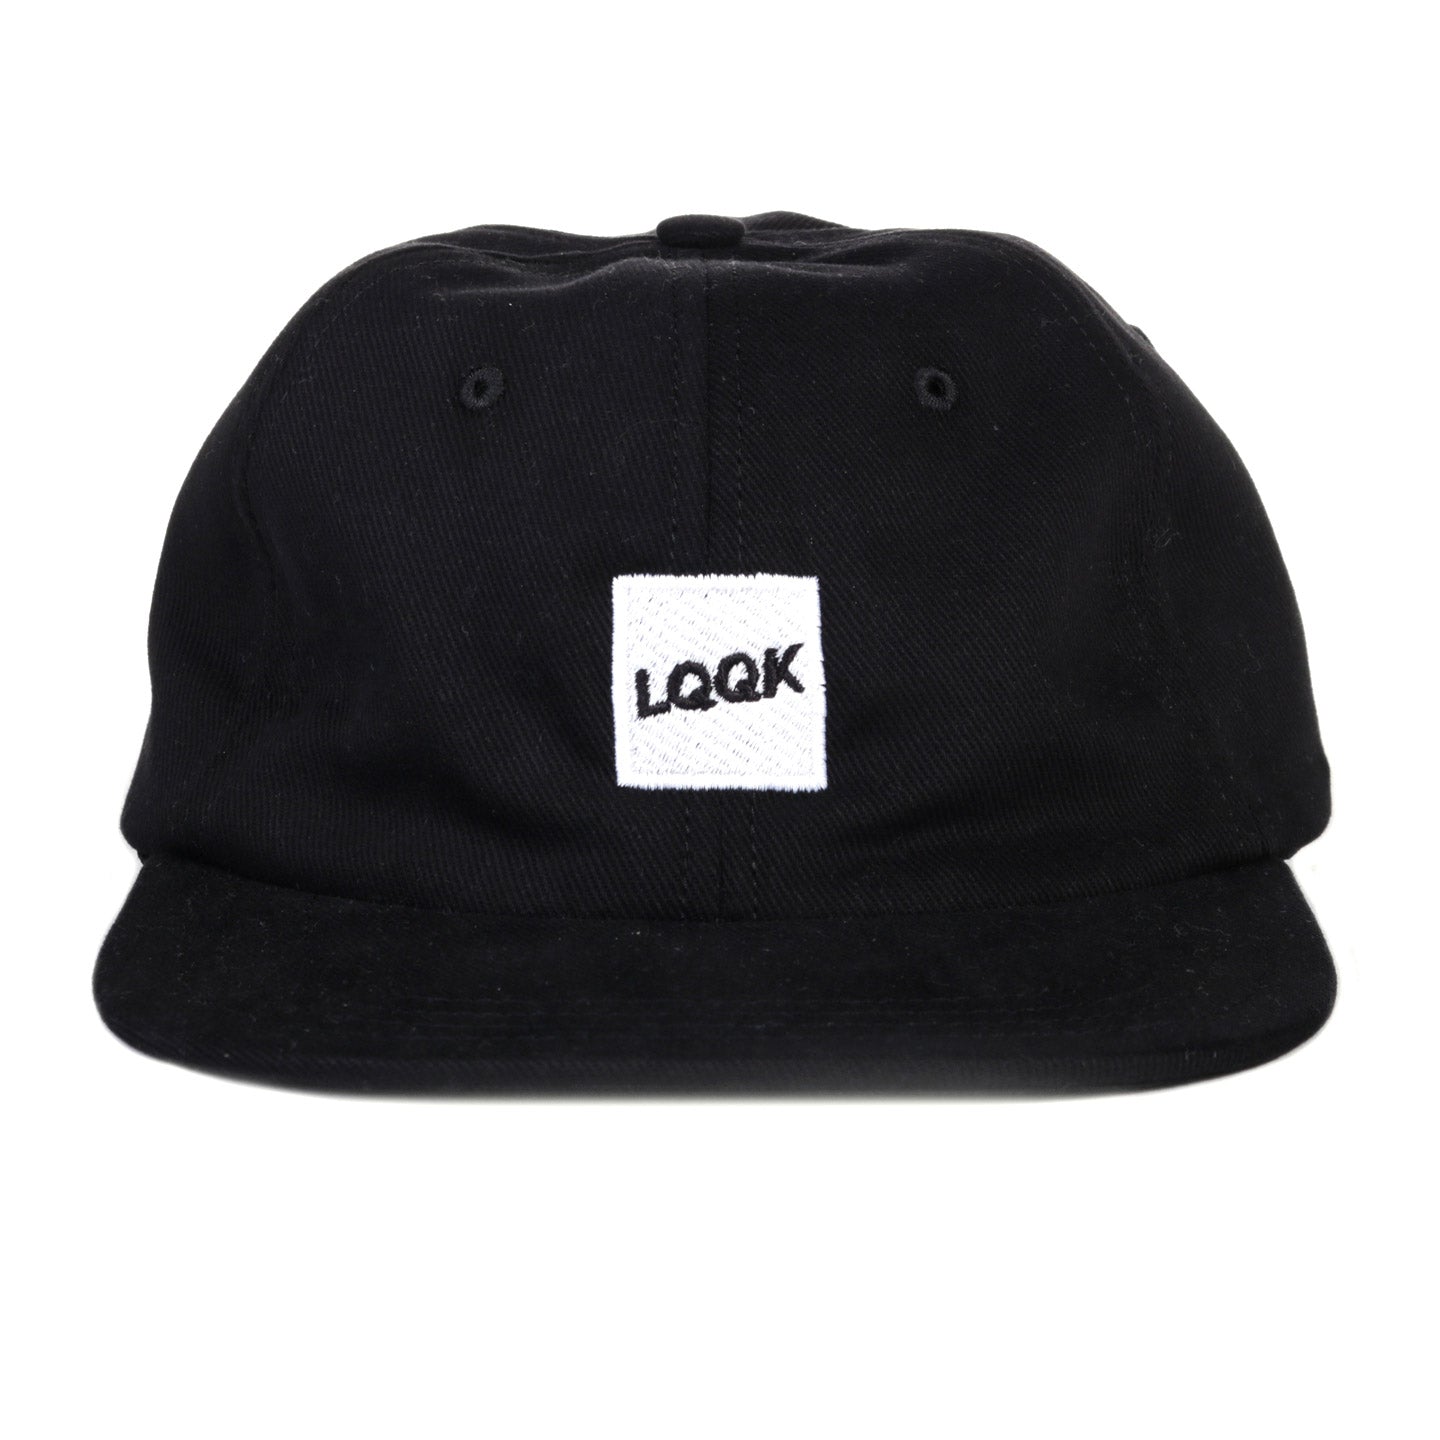 LQQK STUDIO BLACK COTTON TWILL LOGO CAP